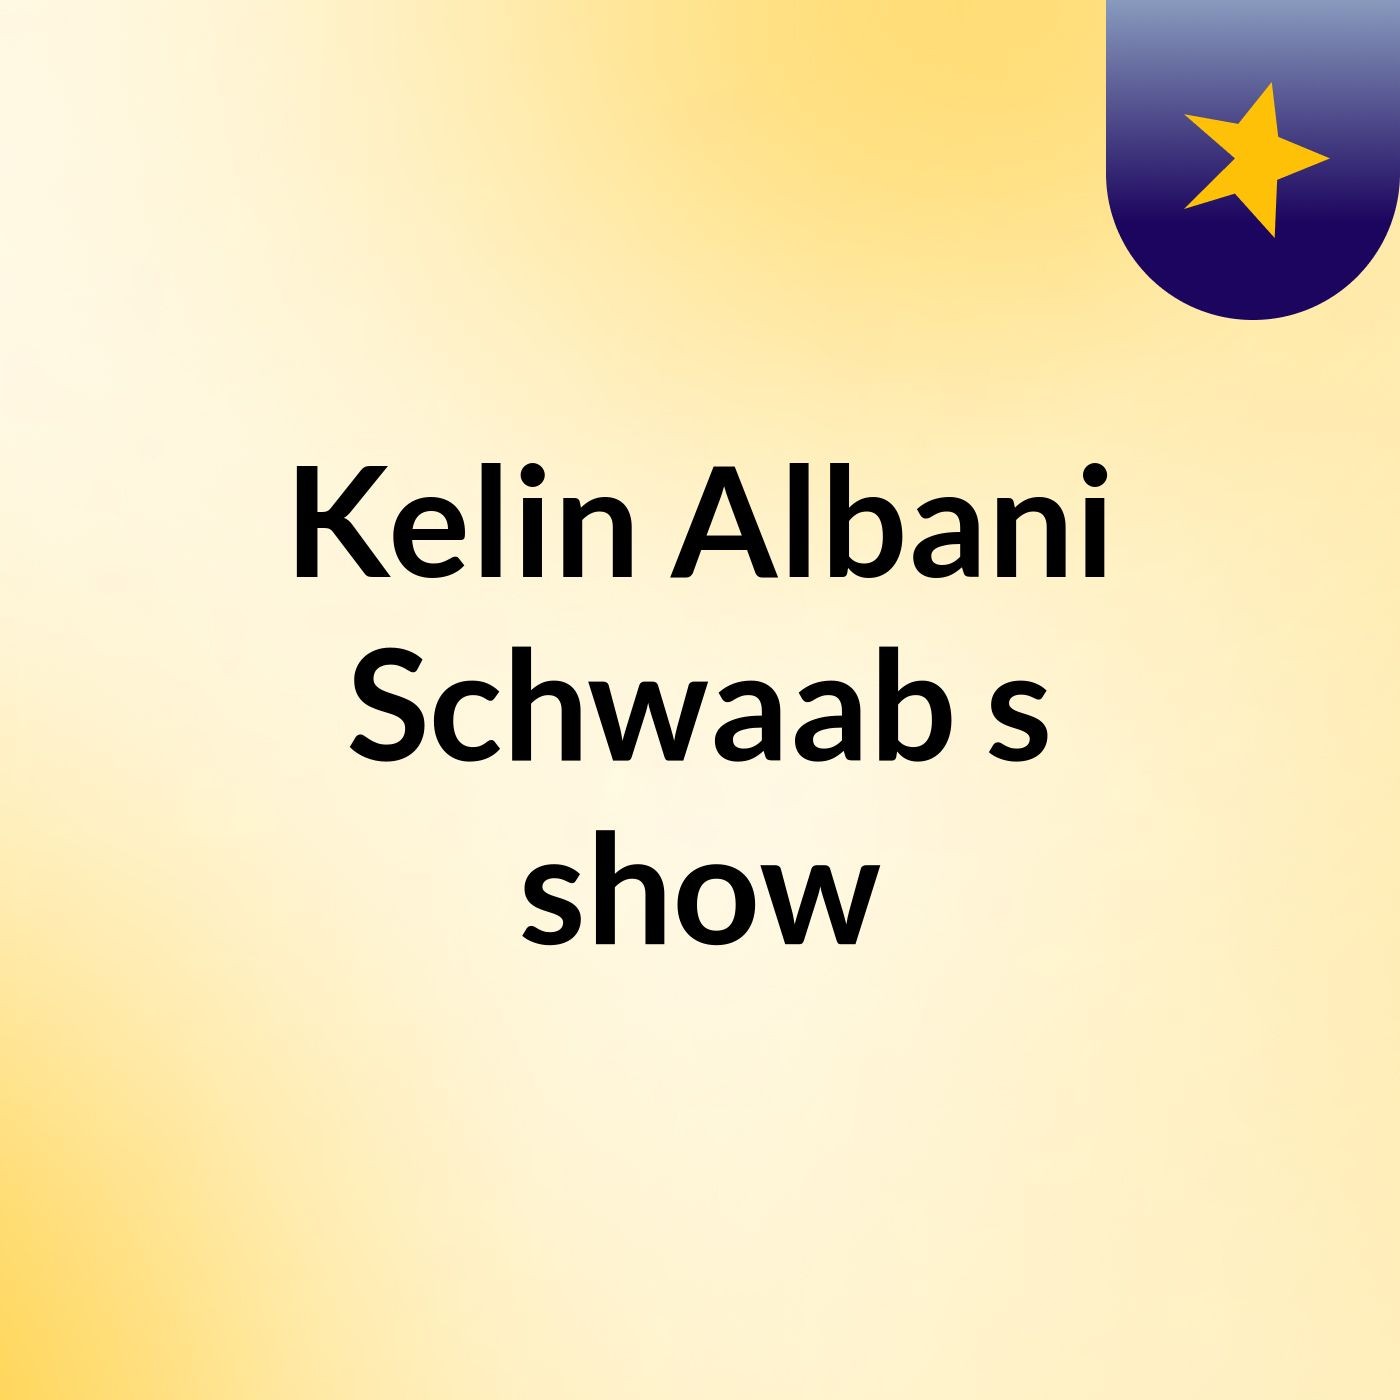 Kelin Albani Schwaab's show